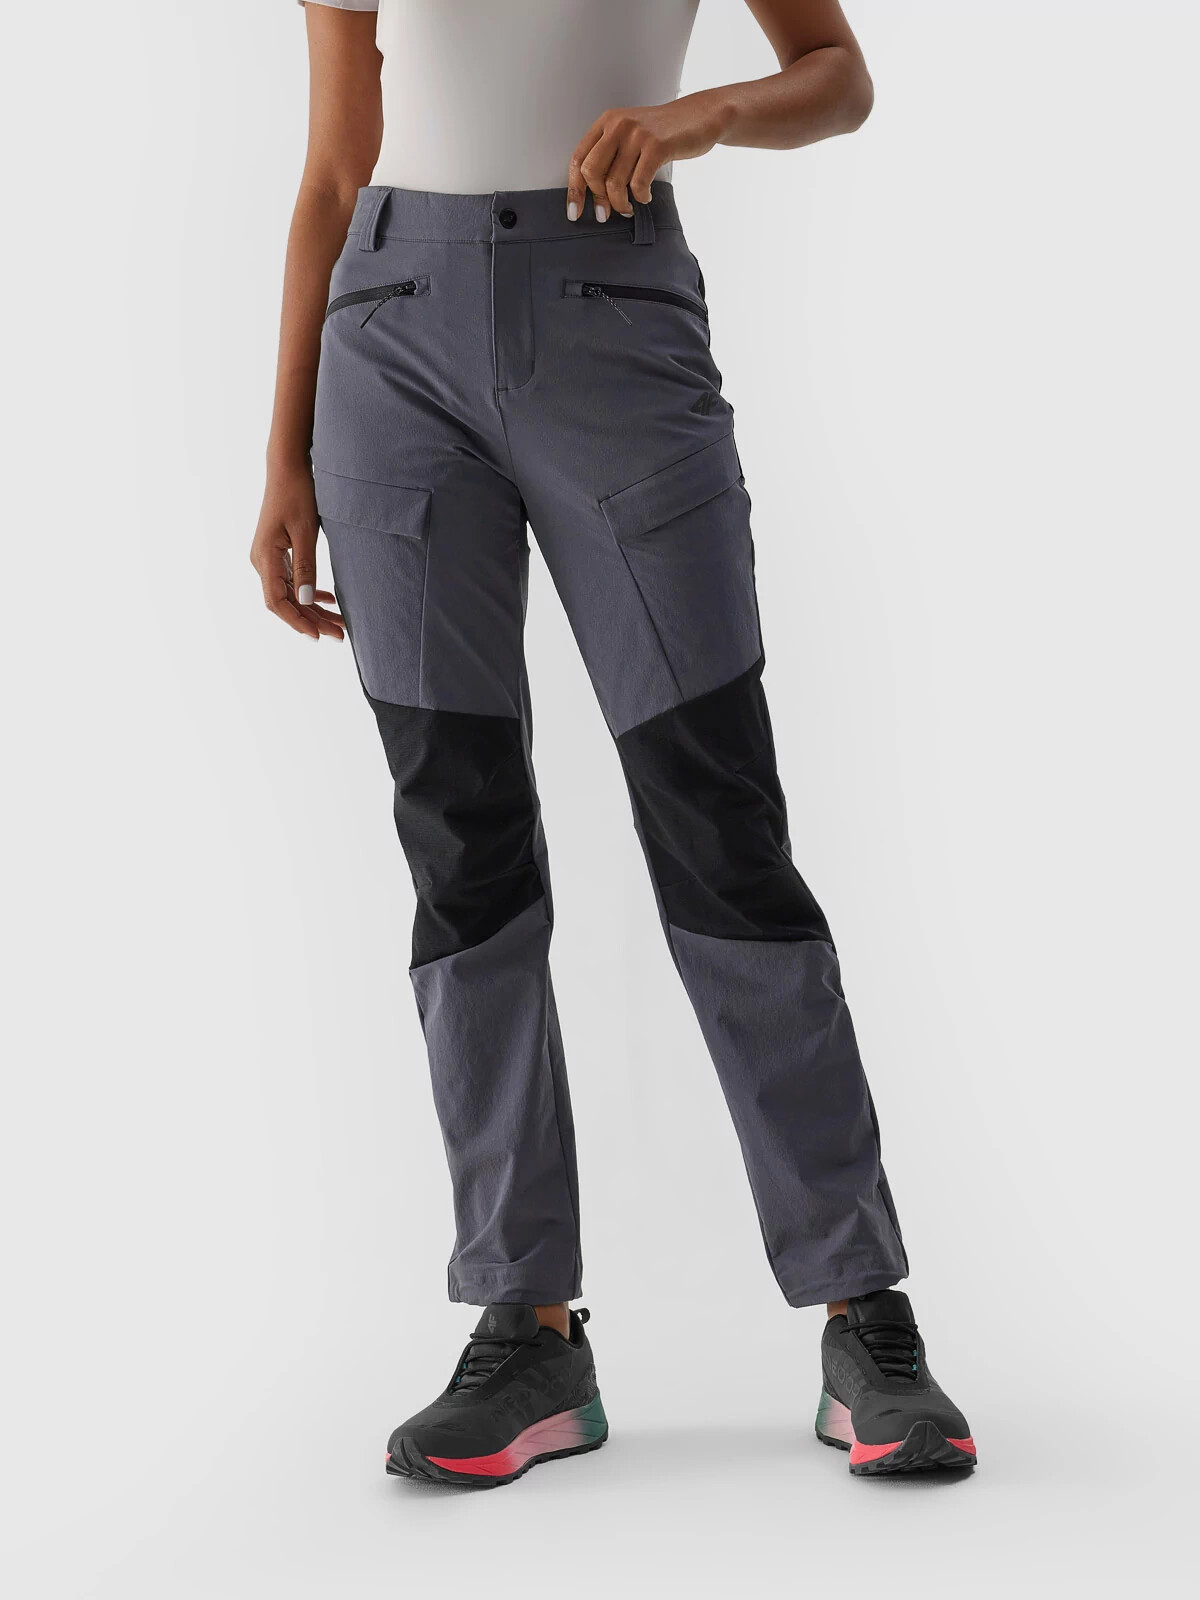 Dámské trekové kalhoty 4FAW23TFTRF407-22S tmavě šedé - 4F XS